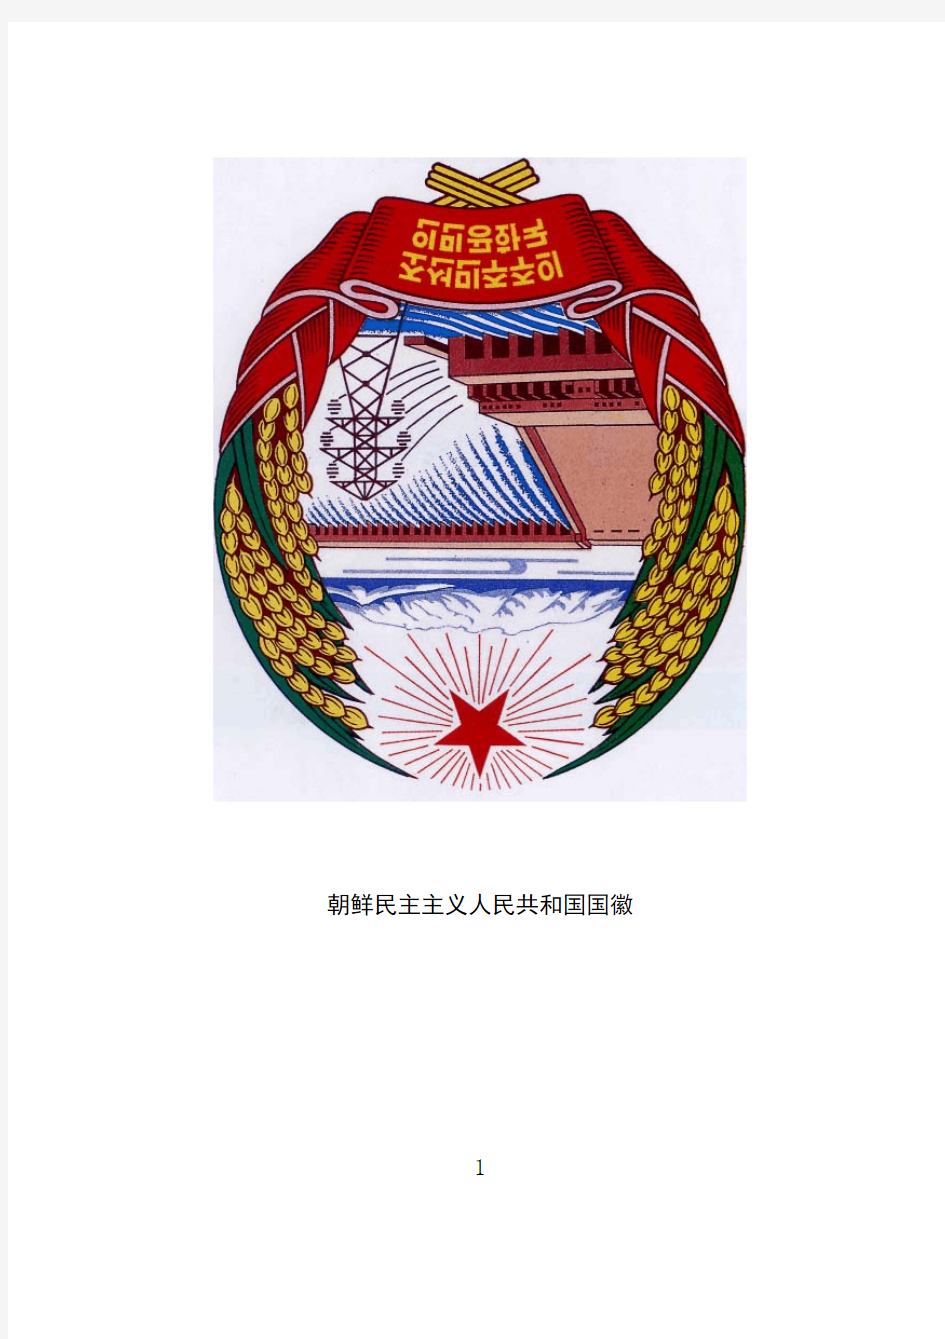 朝鲜民主主义人民共和国社会主义宪法(简体汉字)